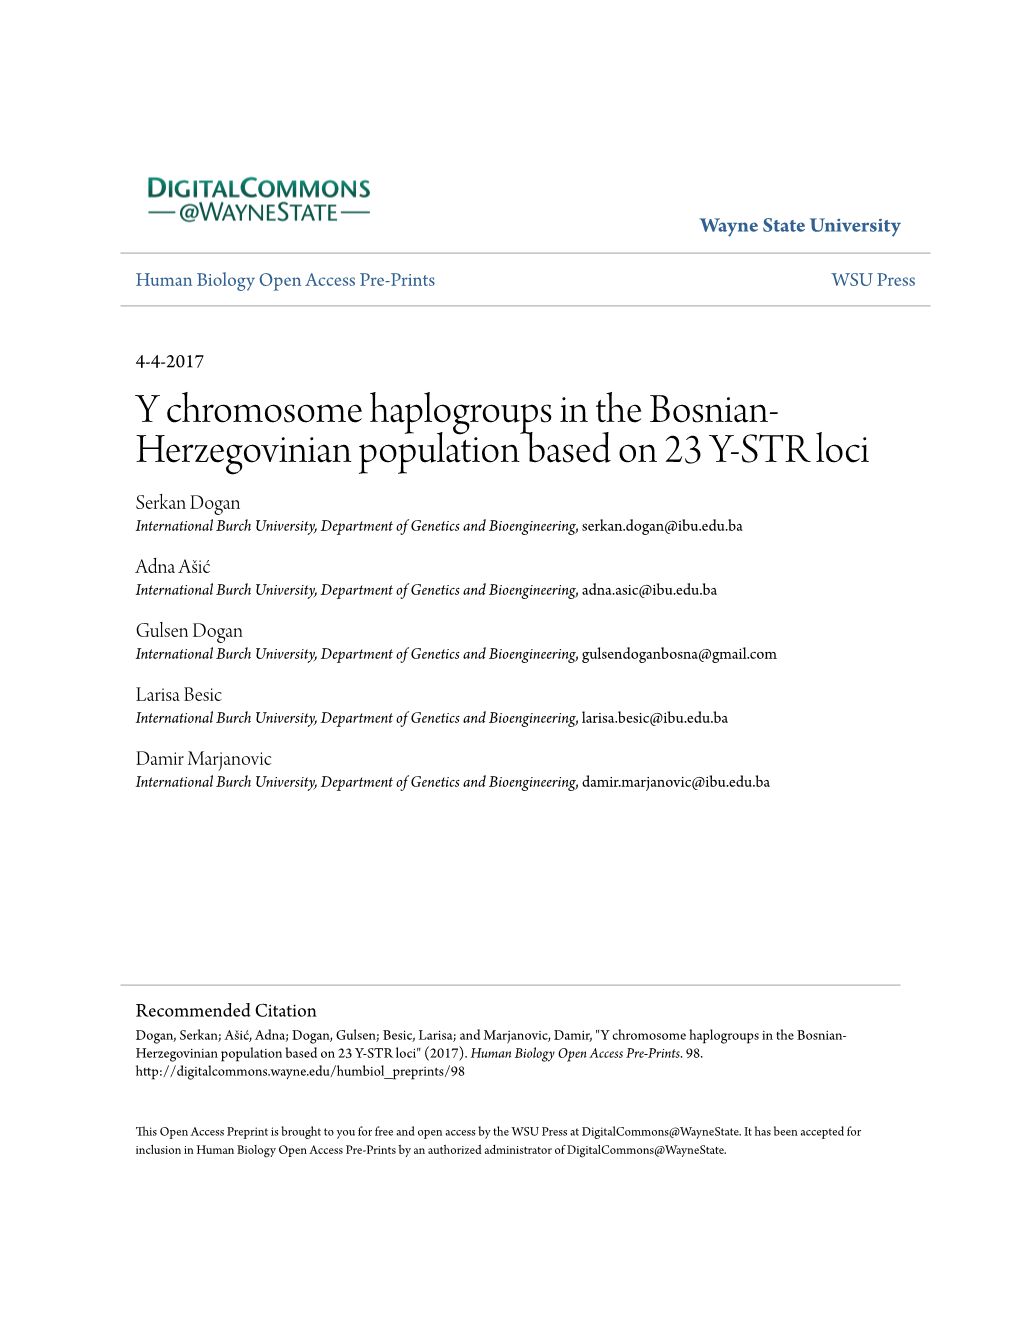 Y Chromosome Haplogroups in the Bosnian-Herzegovinian Population Based on 23 Y-STR Loci Serkan Dogan1, Adna Ašić1, Gulsen Dogan1, Larisa Besic1, Damir Marjanovic1